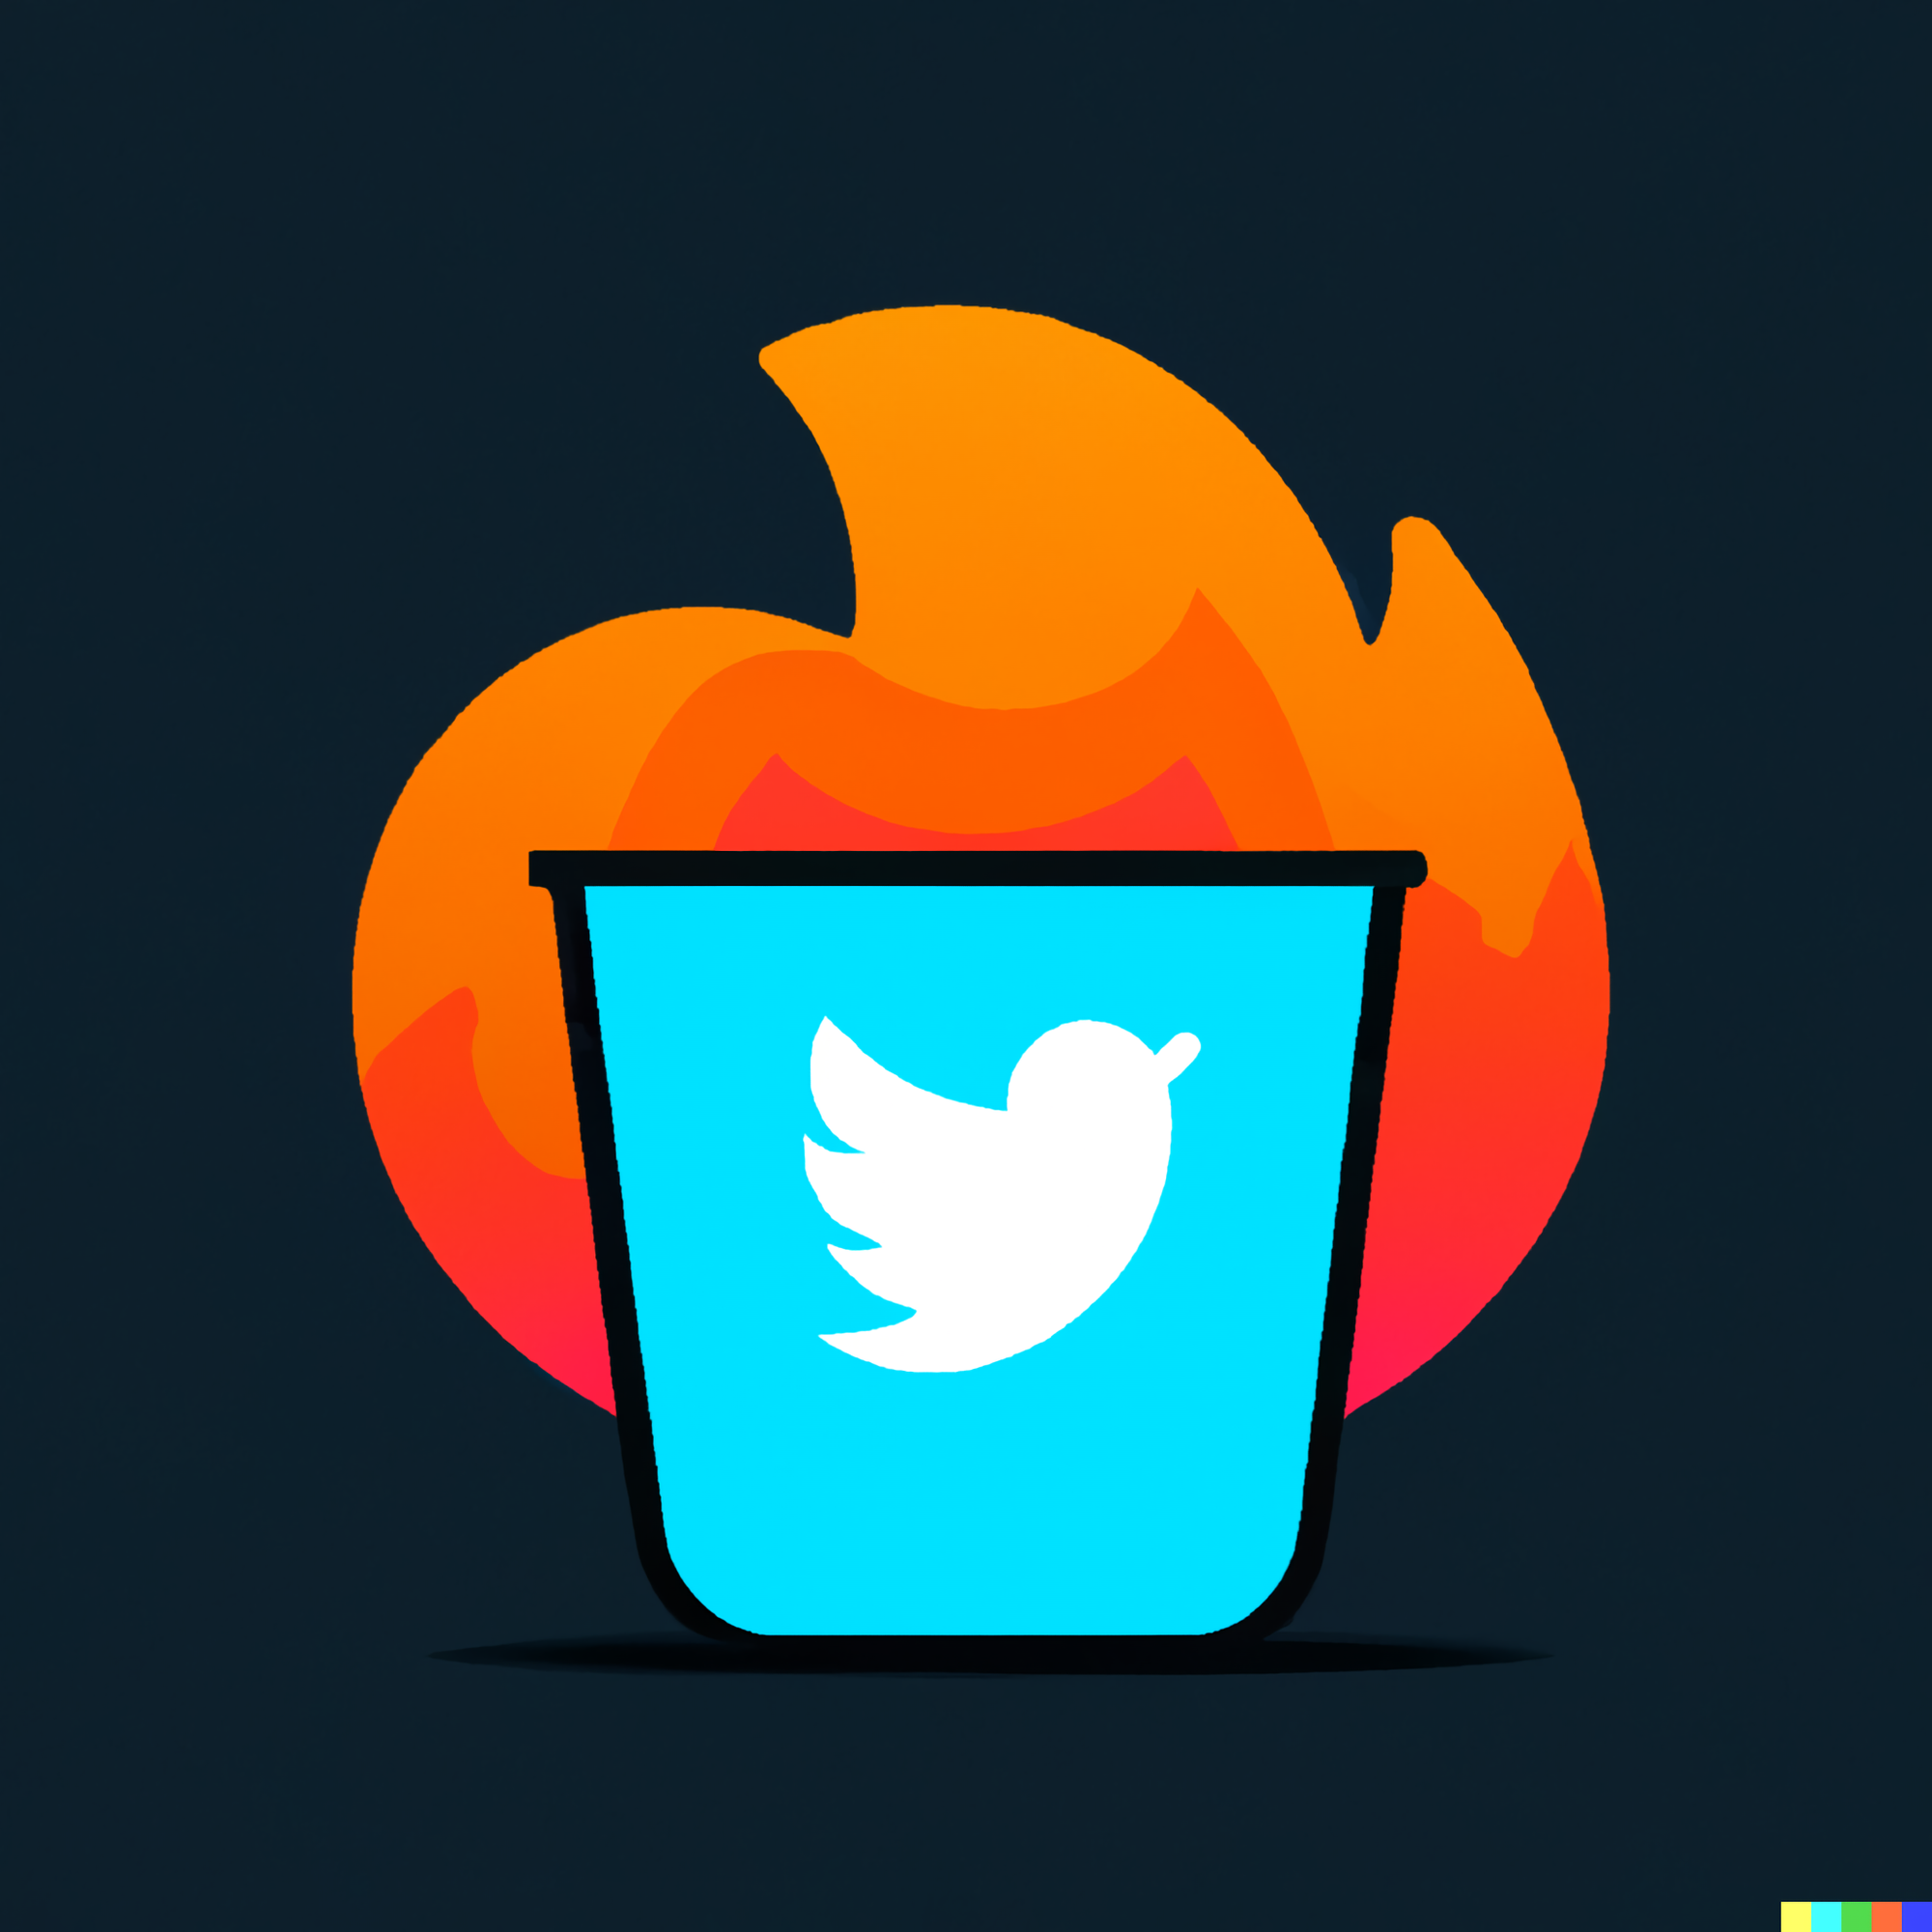 Twitter as a dumpster fire.